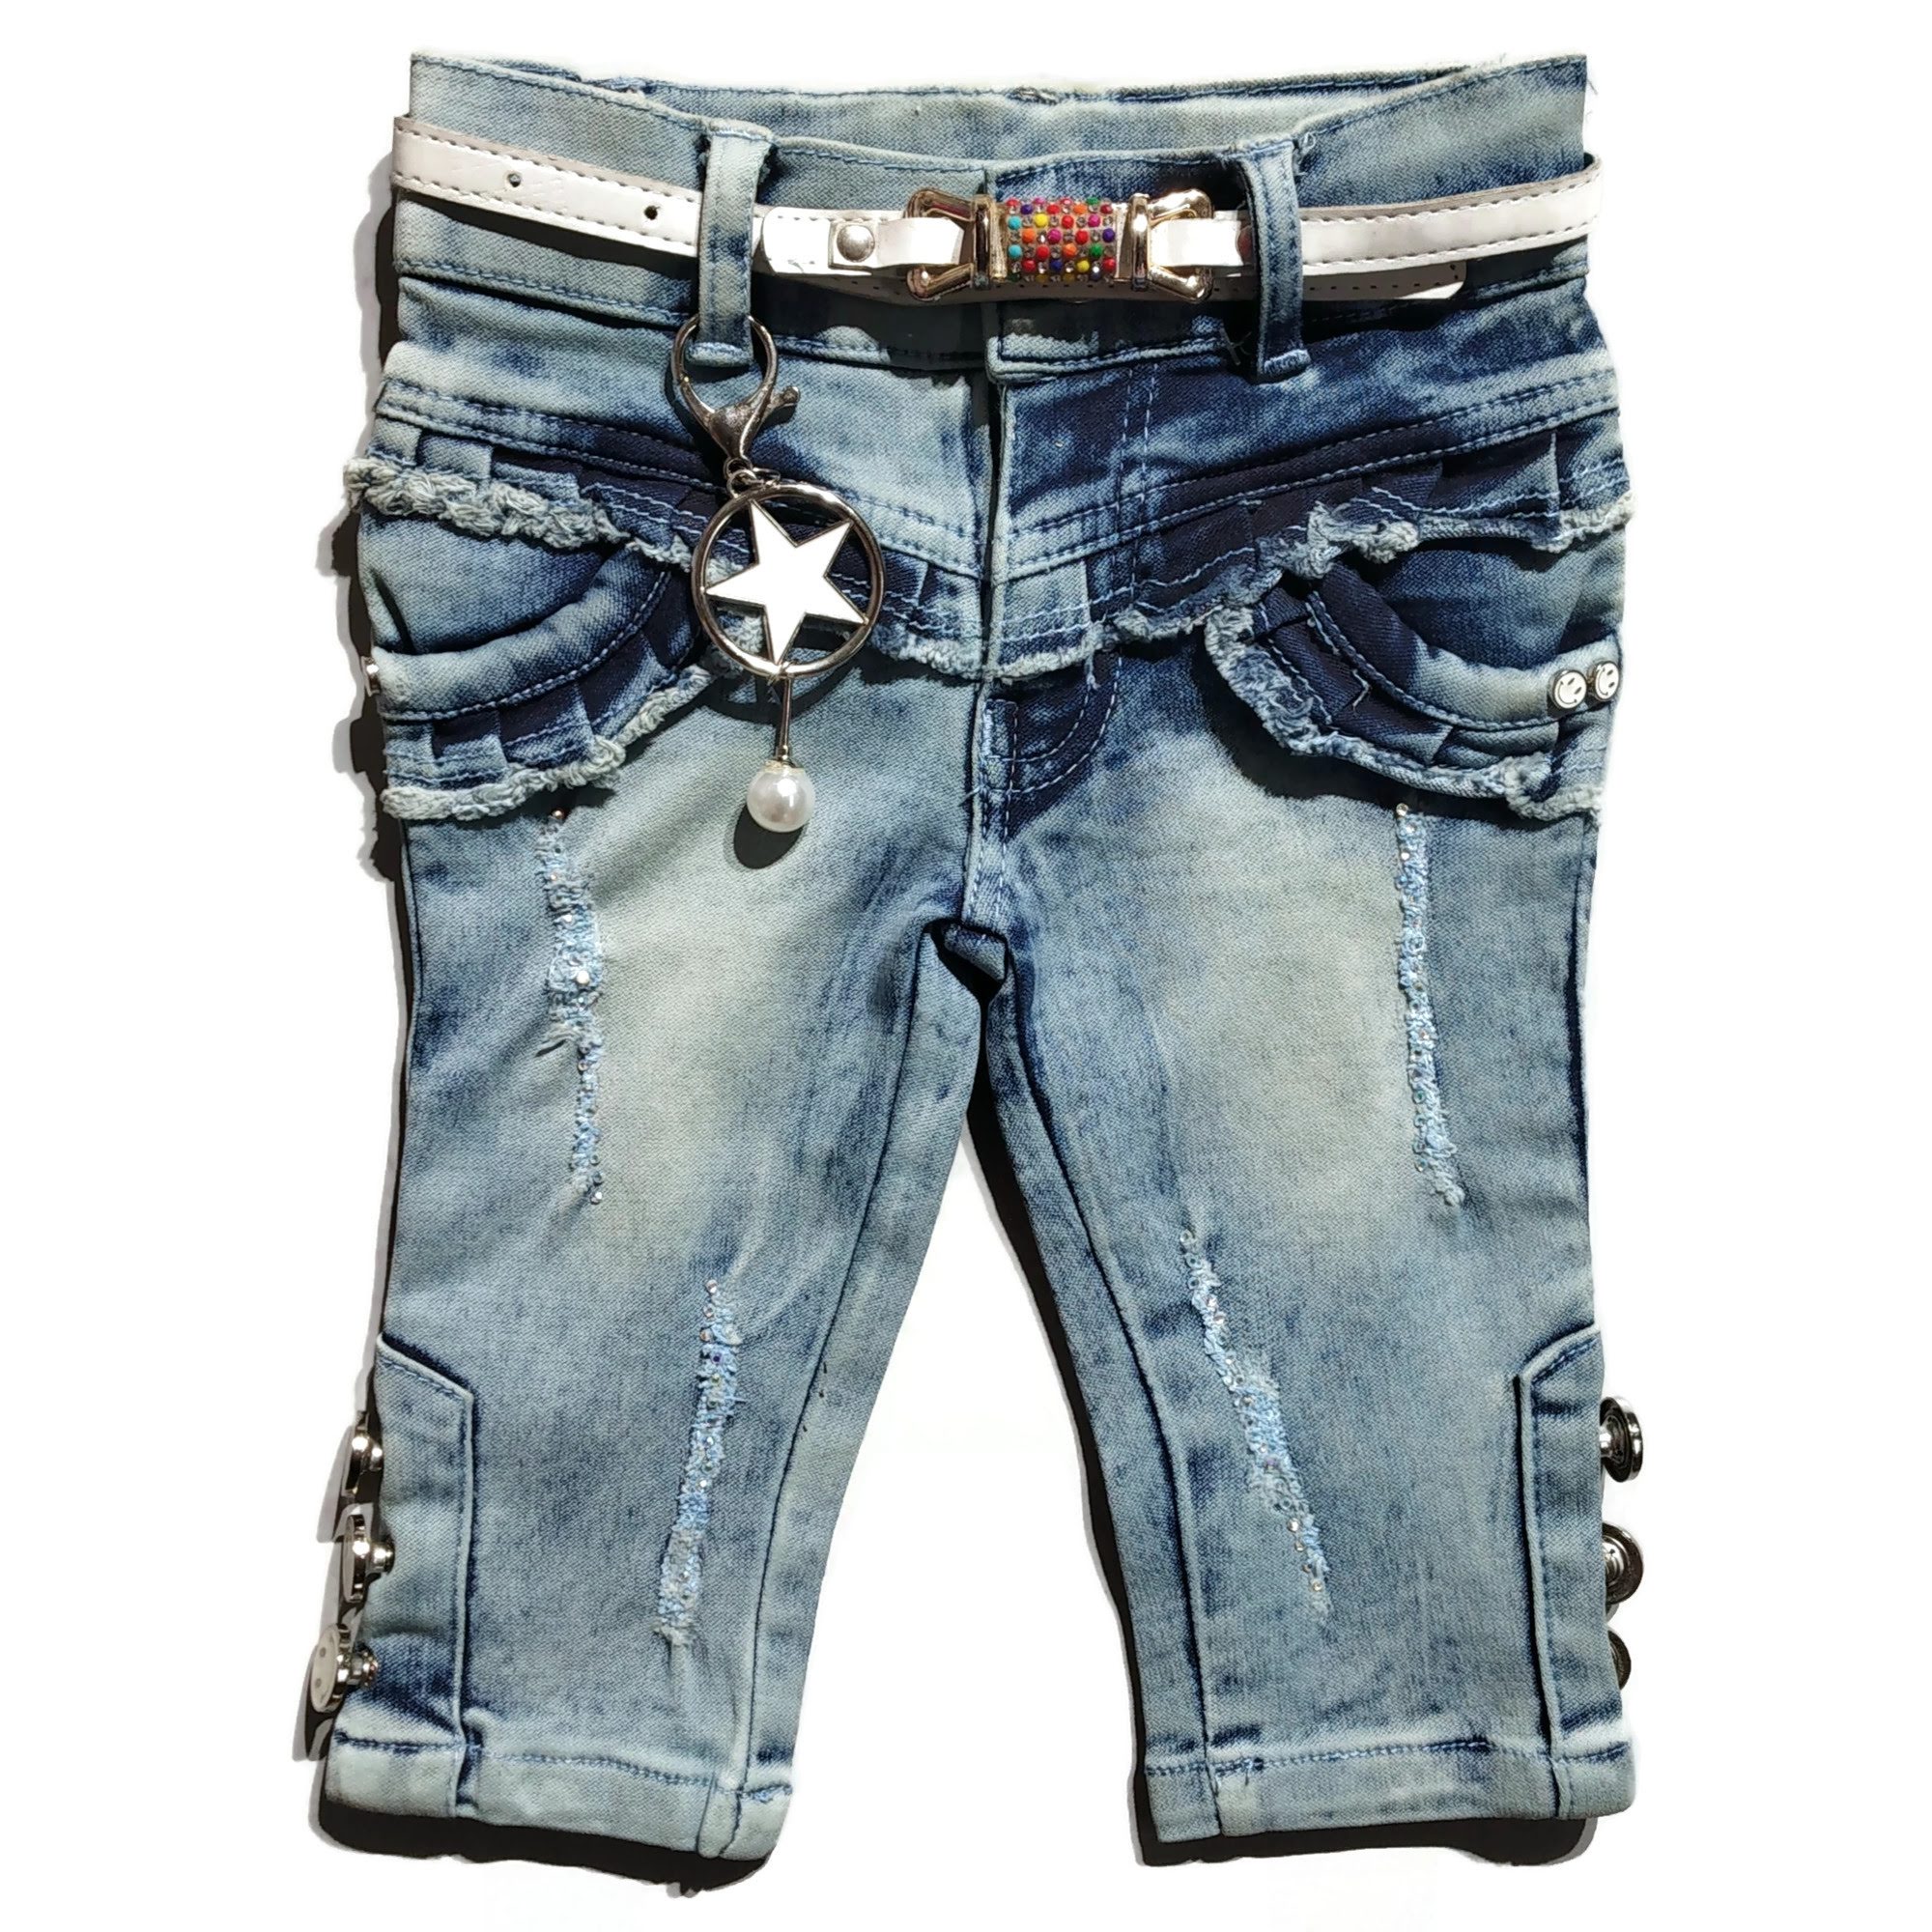 Women's Skinny Jeans stretch denim low waist Pants Blue faded Sizes UK 4-12  | eBay